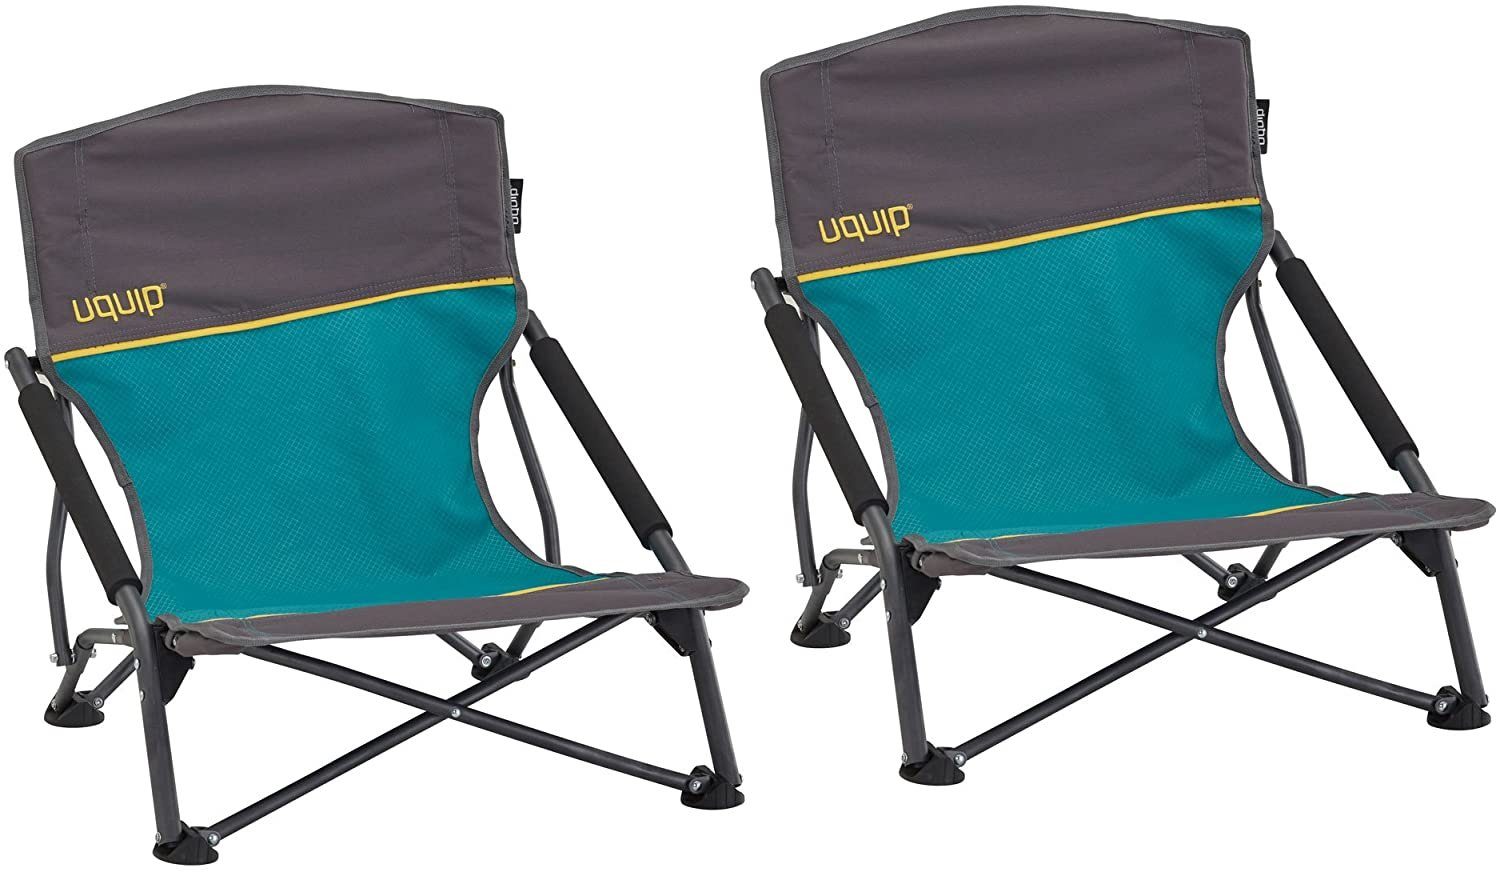 UQUIP Campingstuhl 2er Set Strandstuhl Sandy - Bequemer Klappstuhl, bis 120 kg, 2er Set, tiefe Sitzfläche für maximalen Komfort